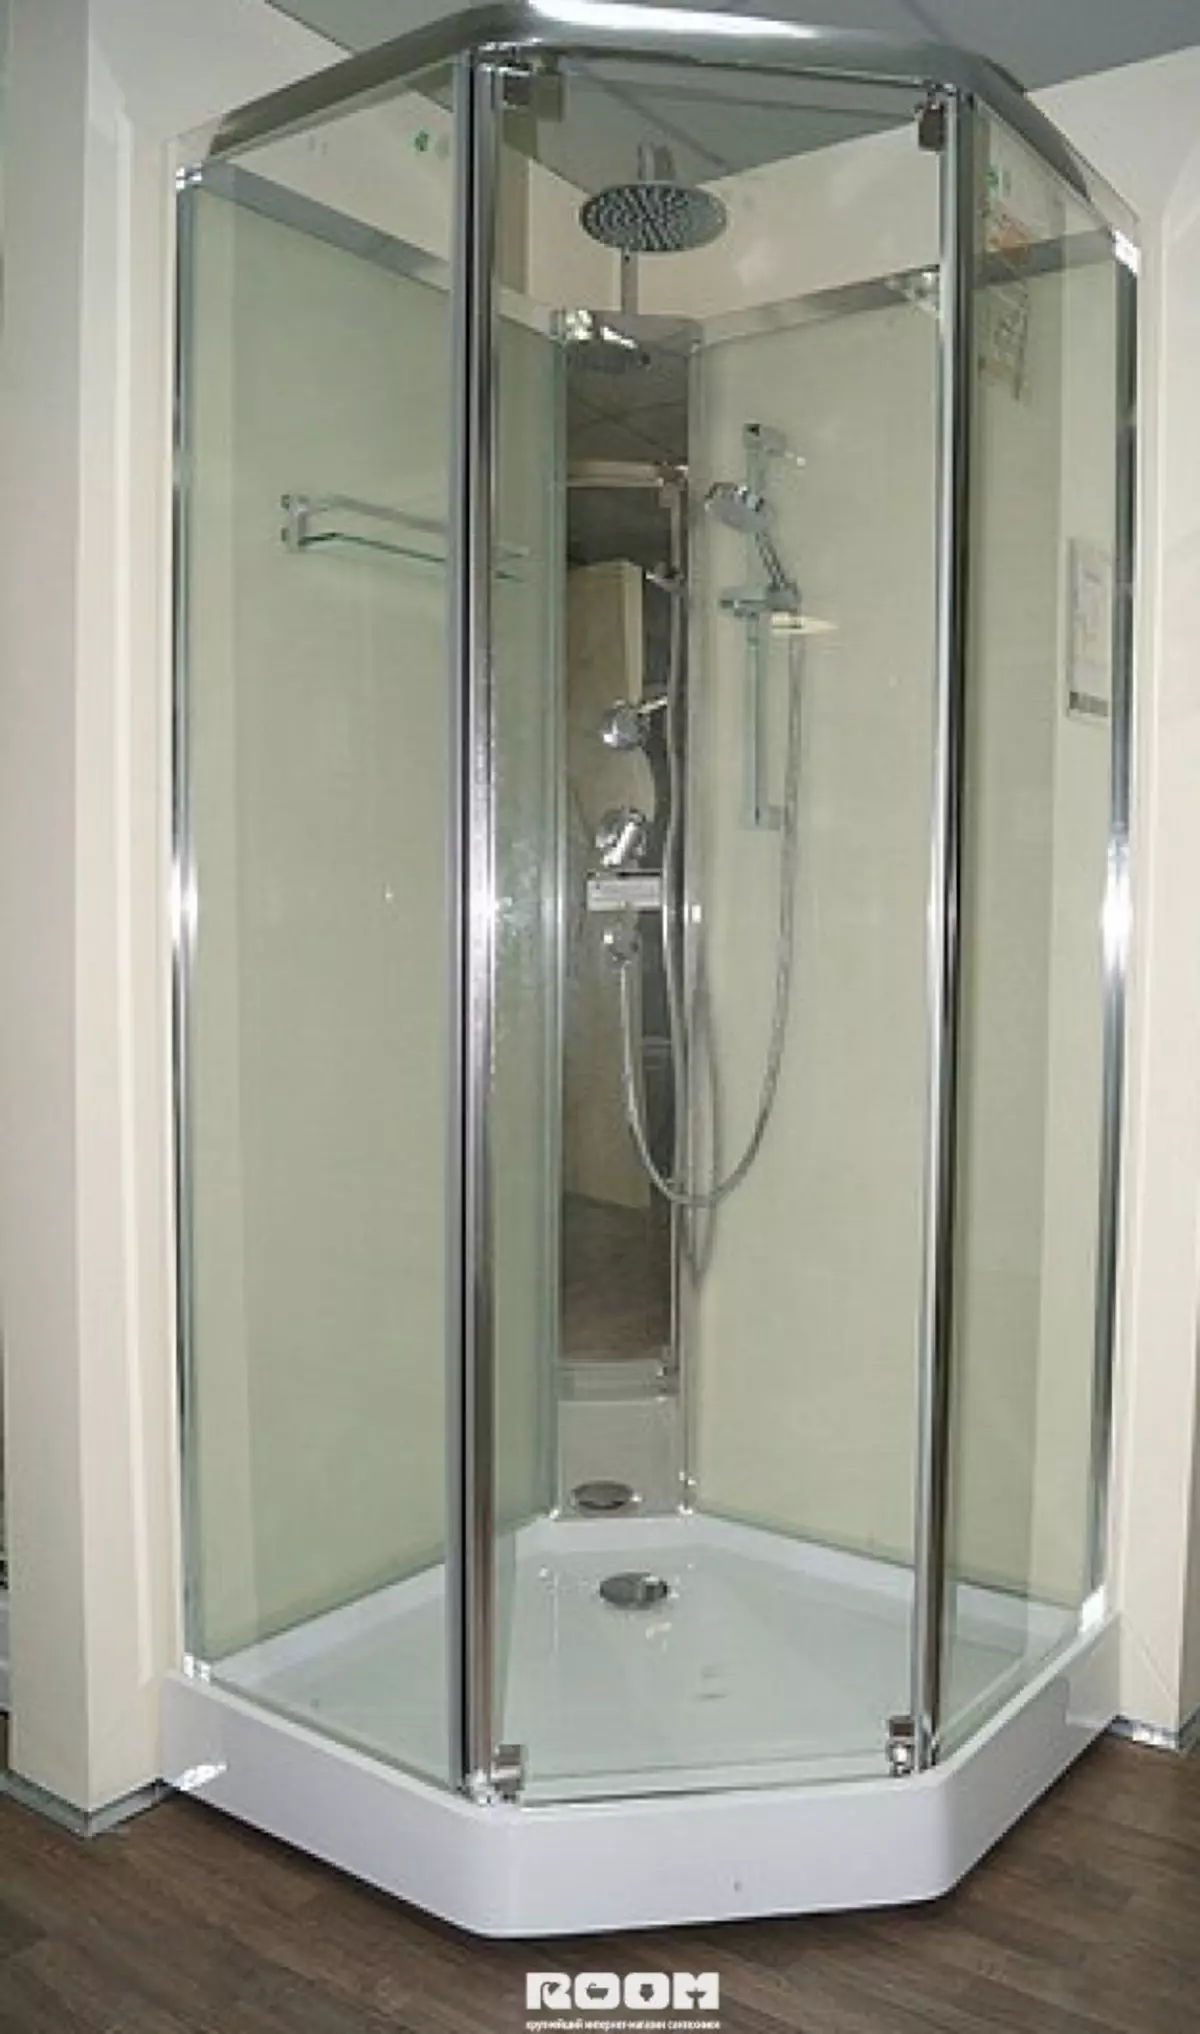 Appollo Shower Cabins. Հատակի խցիկներ բաղնիքով եւ այլ մոդելներով: Դրանց առավելություններն ու թերությունները: Ինչպես ընտրել տնակ: 10338_15